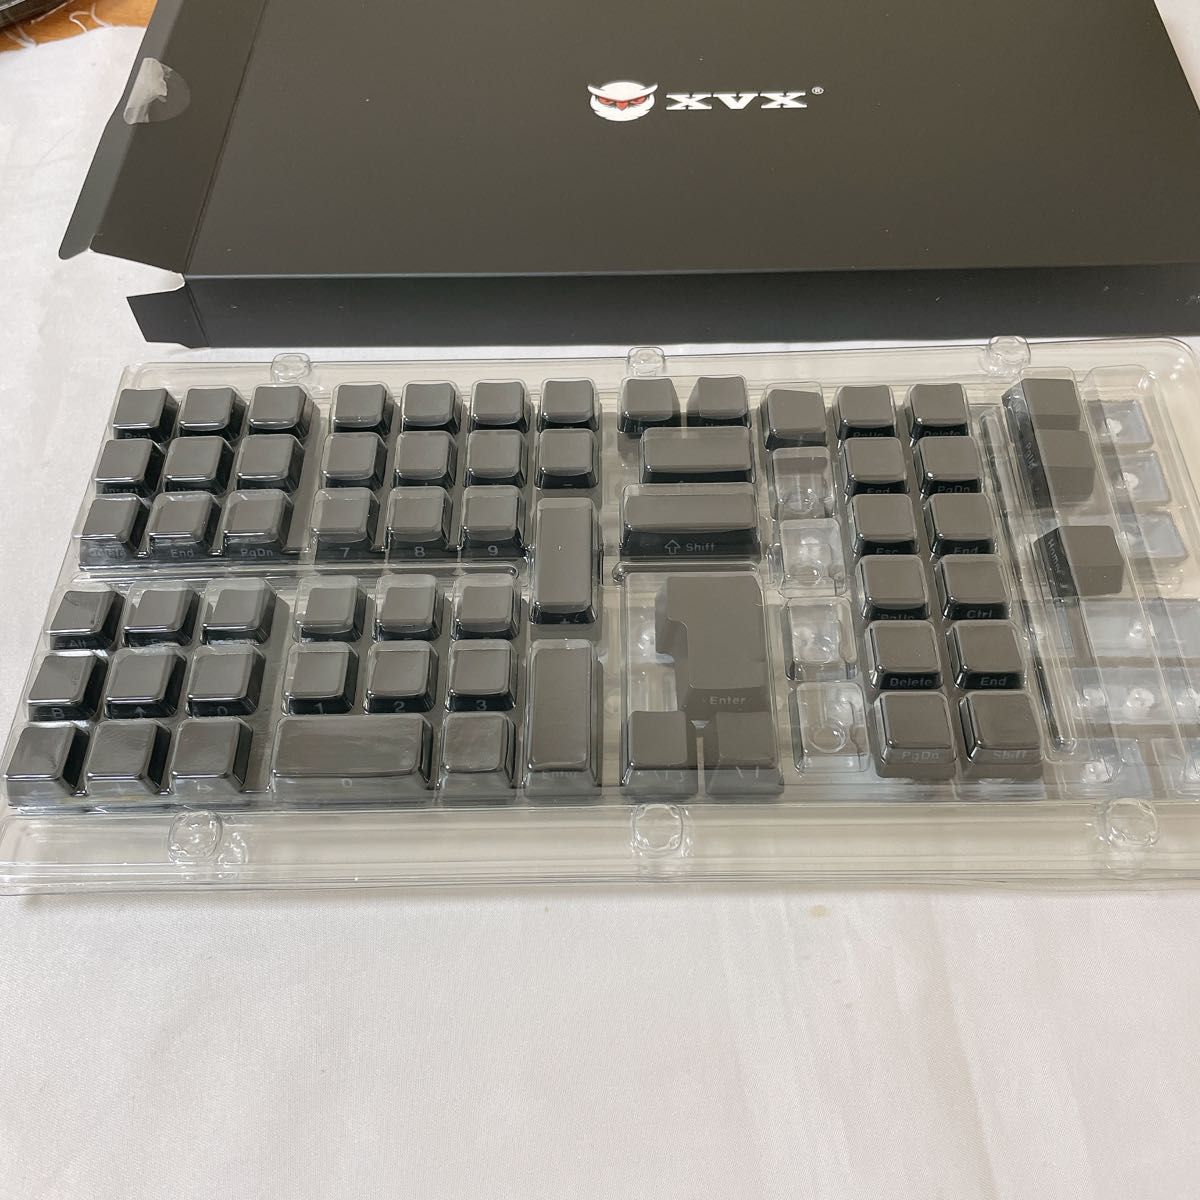 136キー XVX キーキャップ キーキャップ OEMプロファイル サイド彫刻 カスタム キーキャップ ブラック キーボード